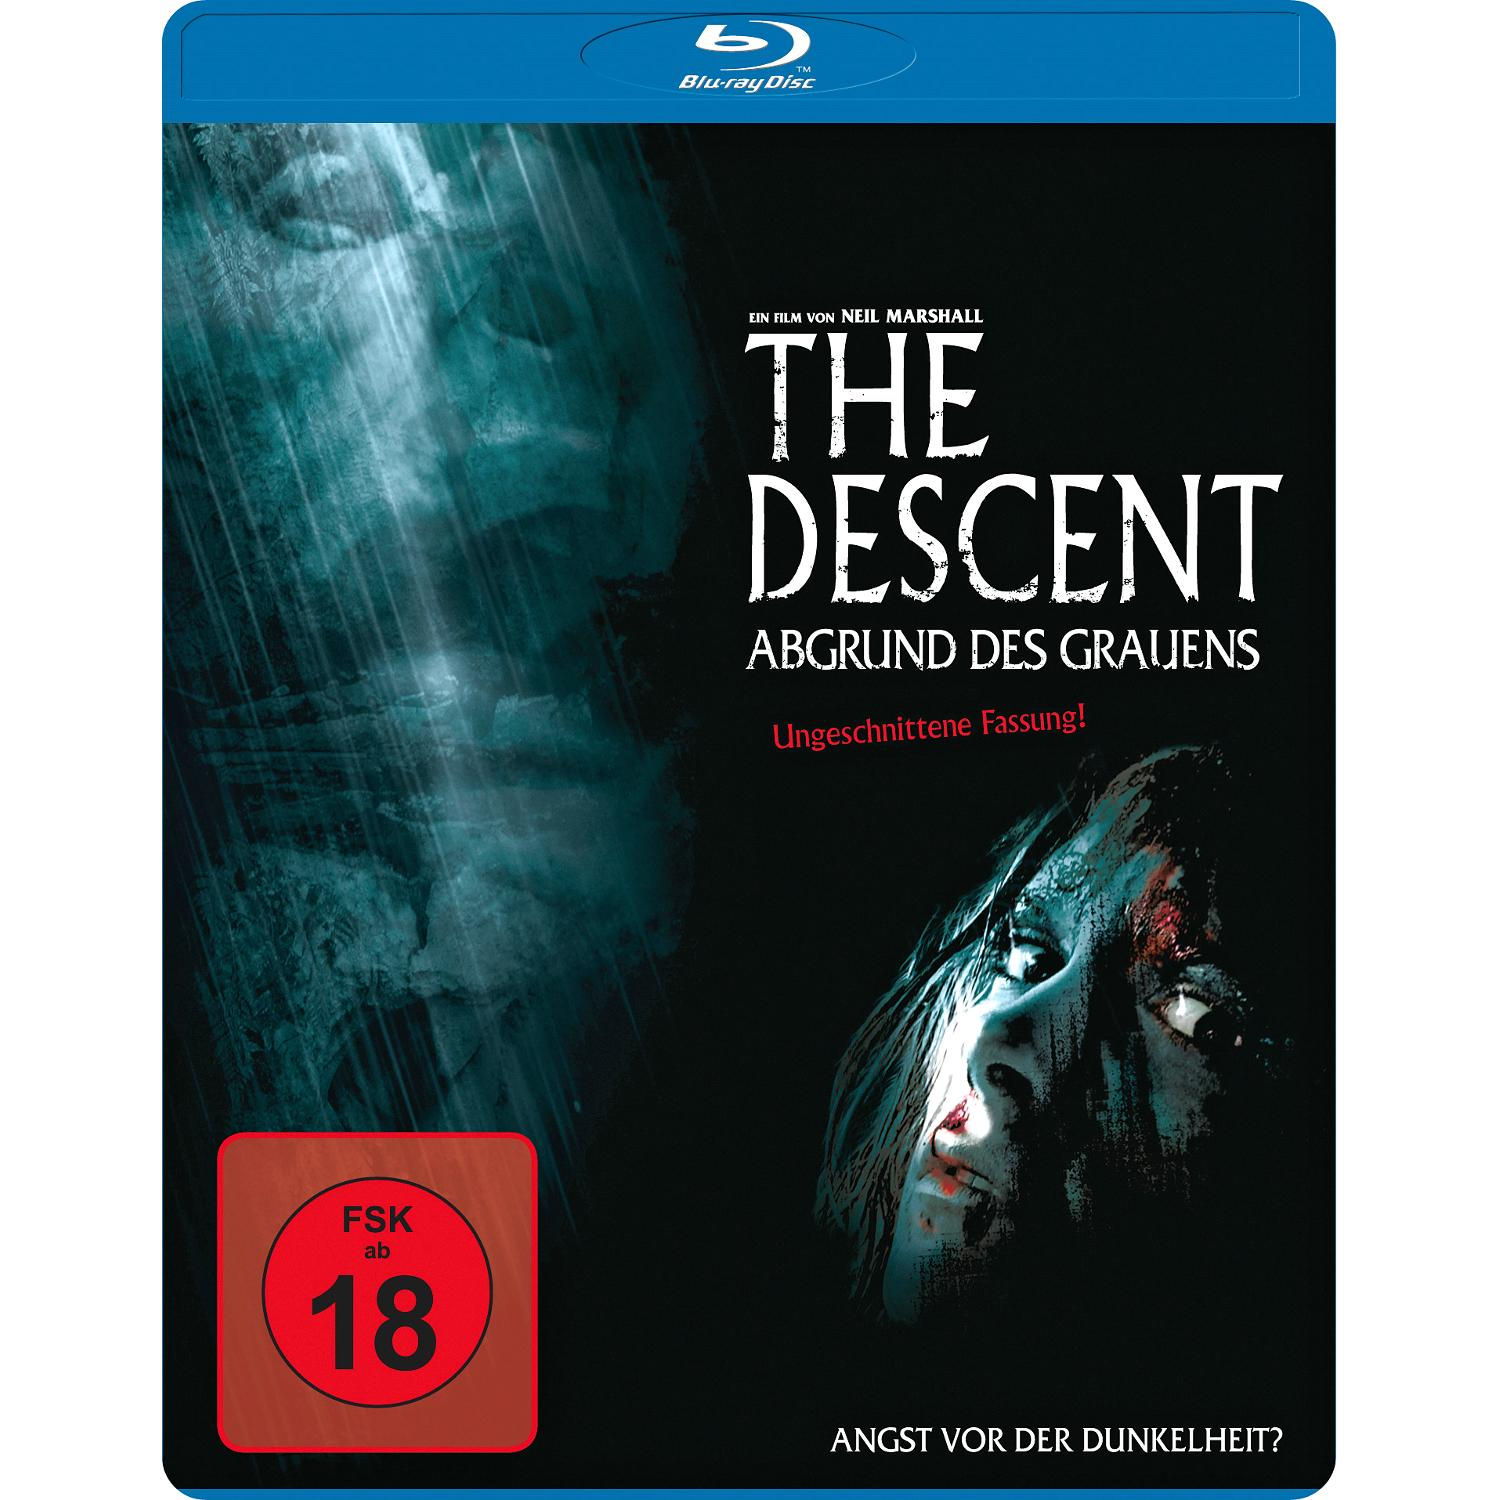 - Abgrund Descent Blu-ray Grauens des The